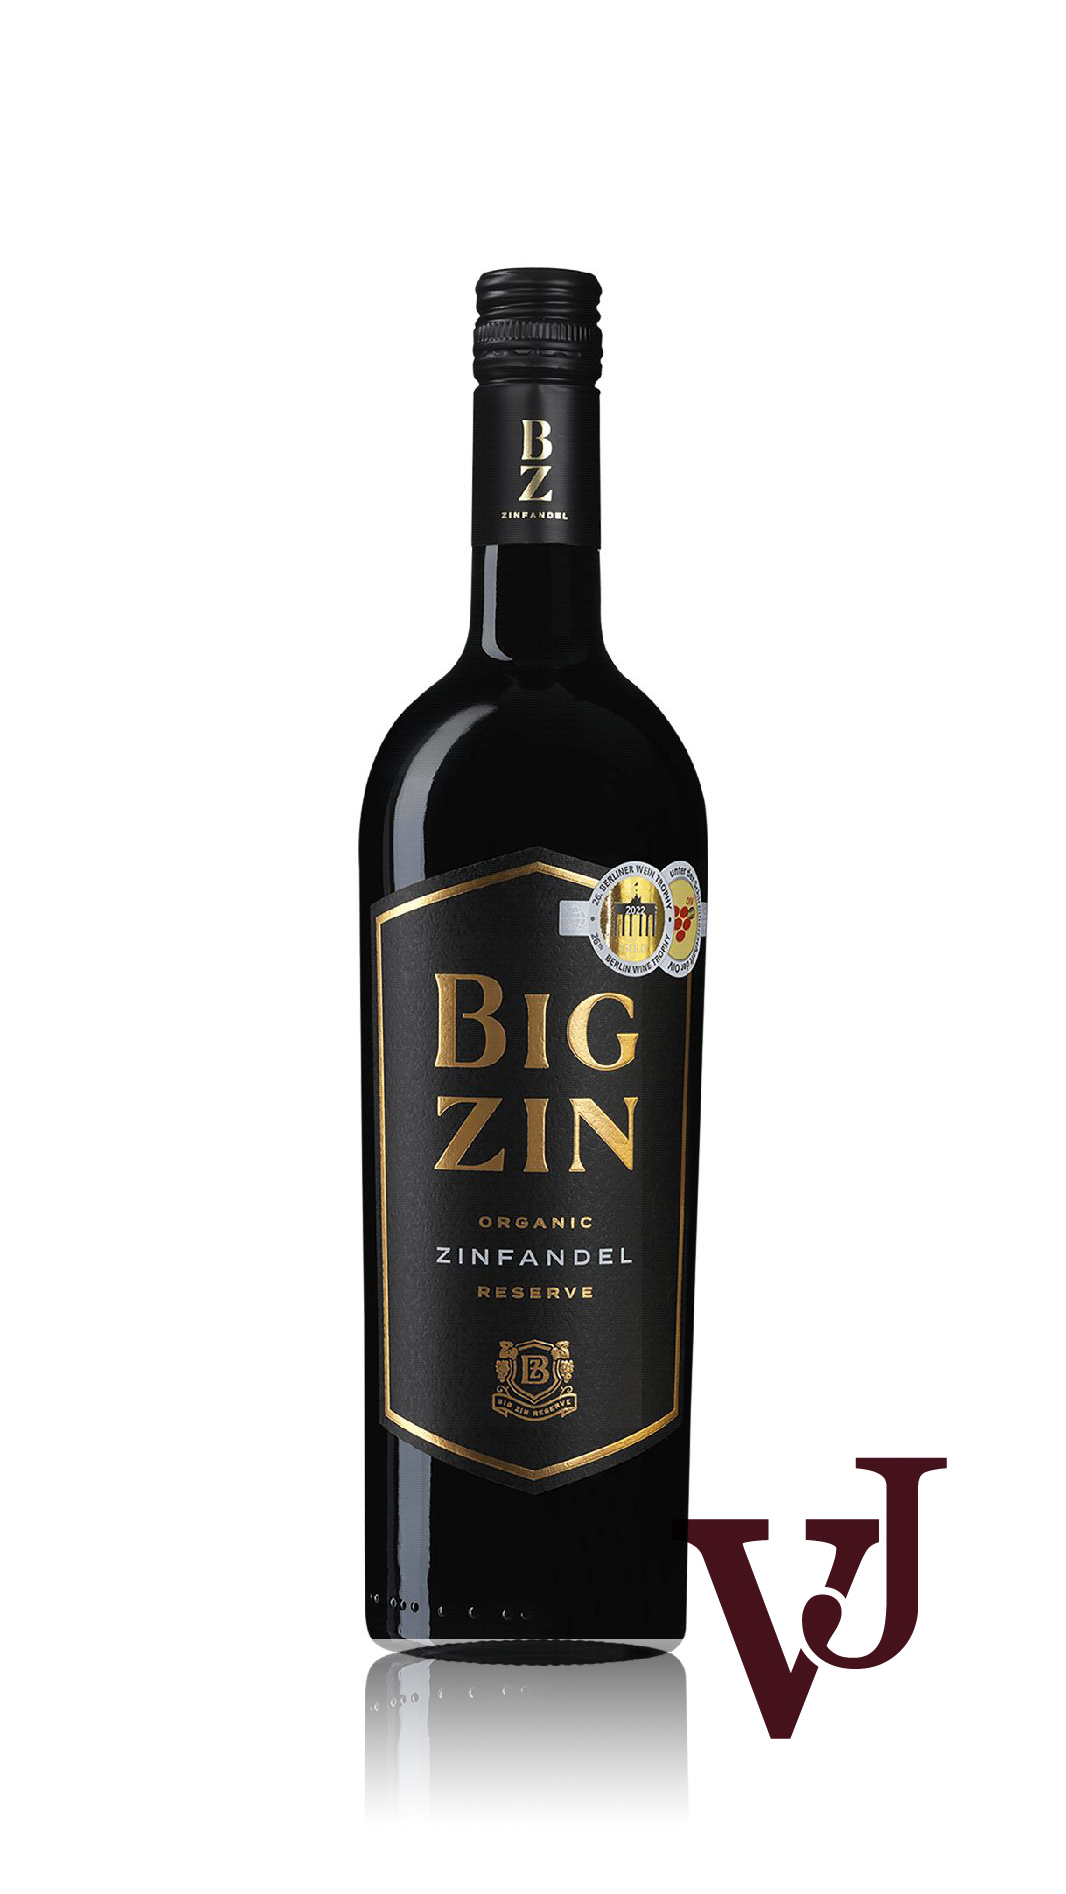 The Big Zin Zinfandel Old Vines